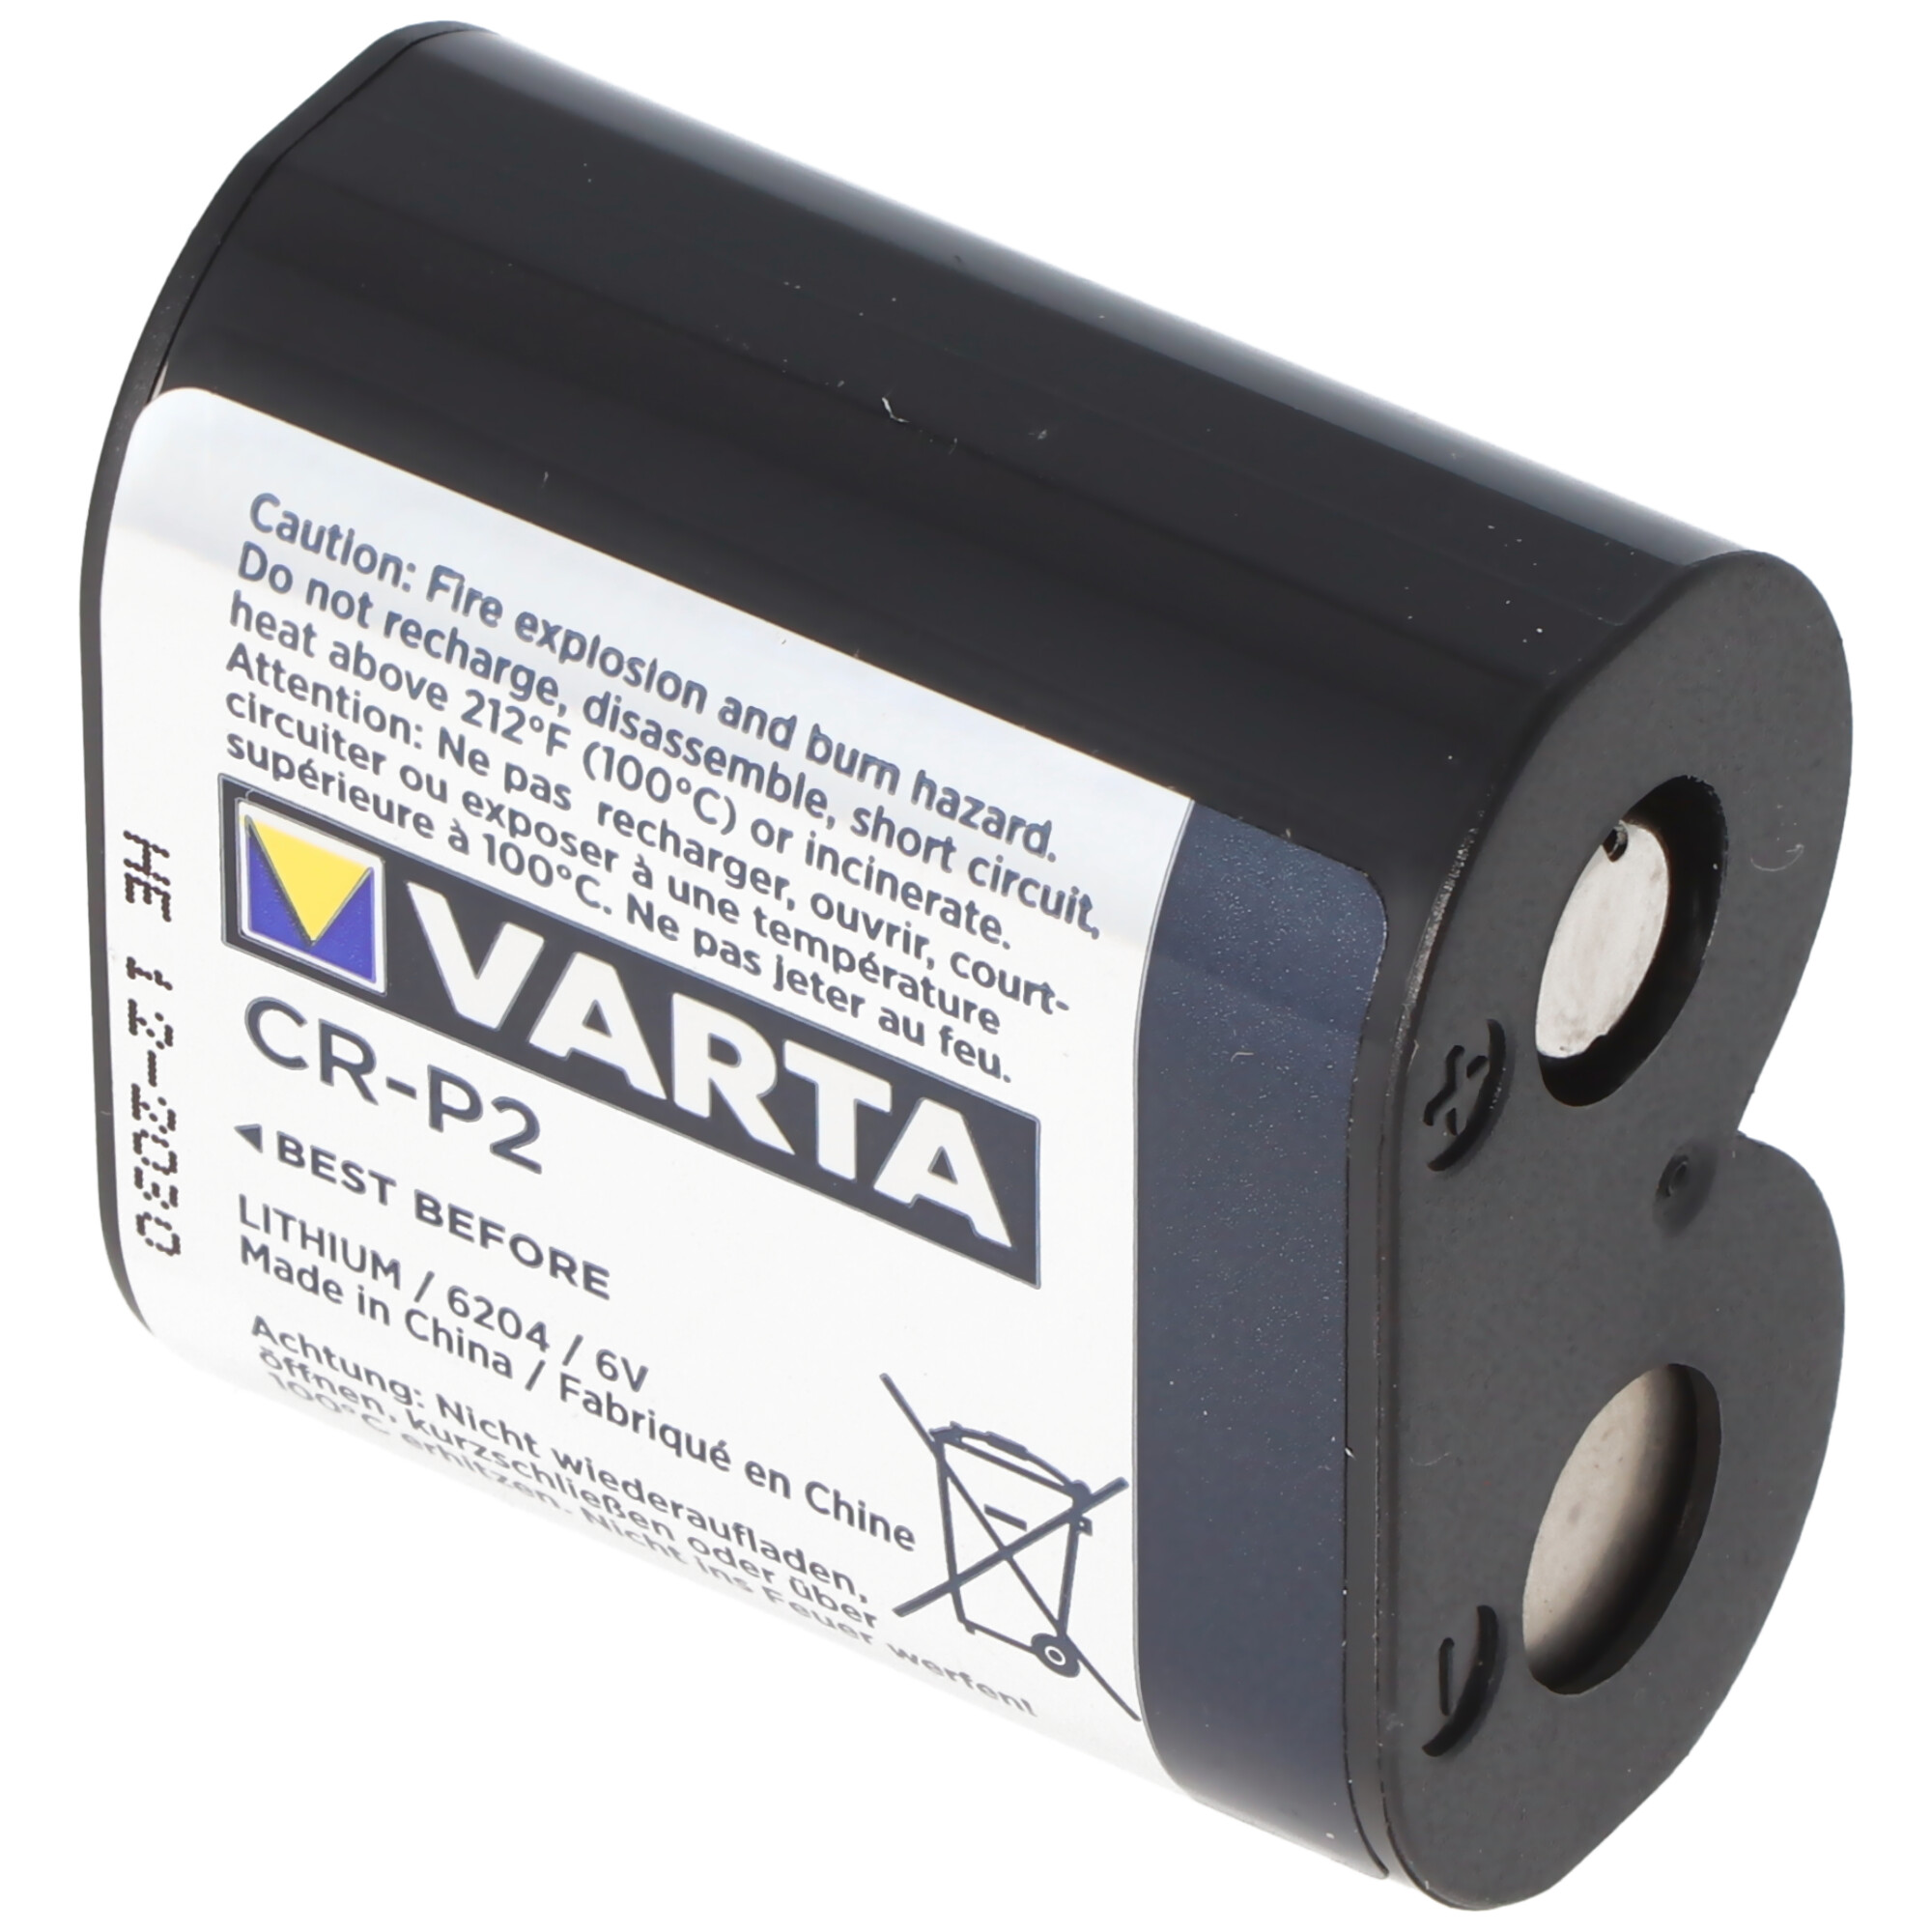 Harde wind De lucht Oorzaak Varta CR-P2 6204 6 volt lithiumbatterij | Batterij voor verwarming |  Batterijen | Akku-Shop Nederland